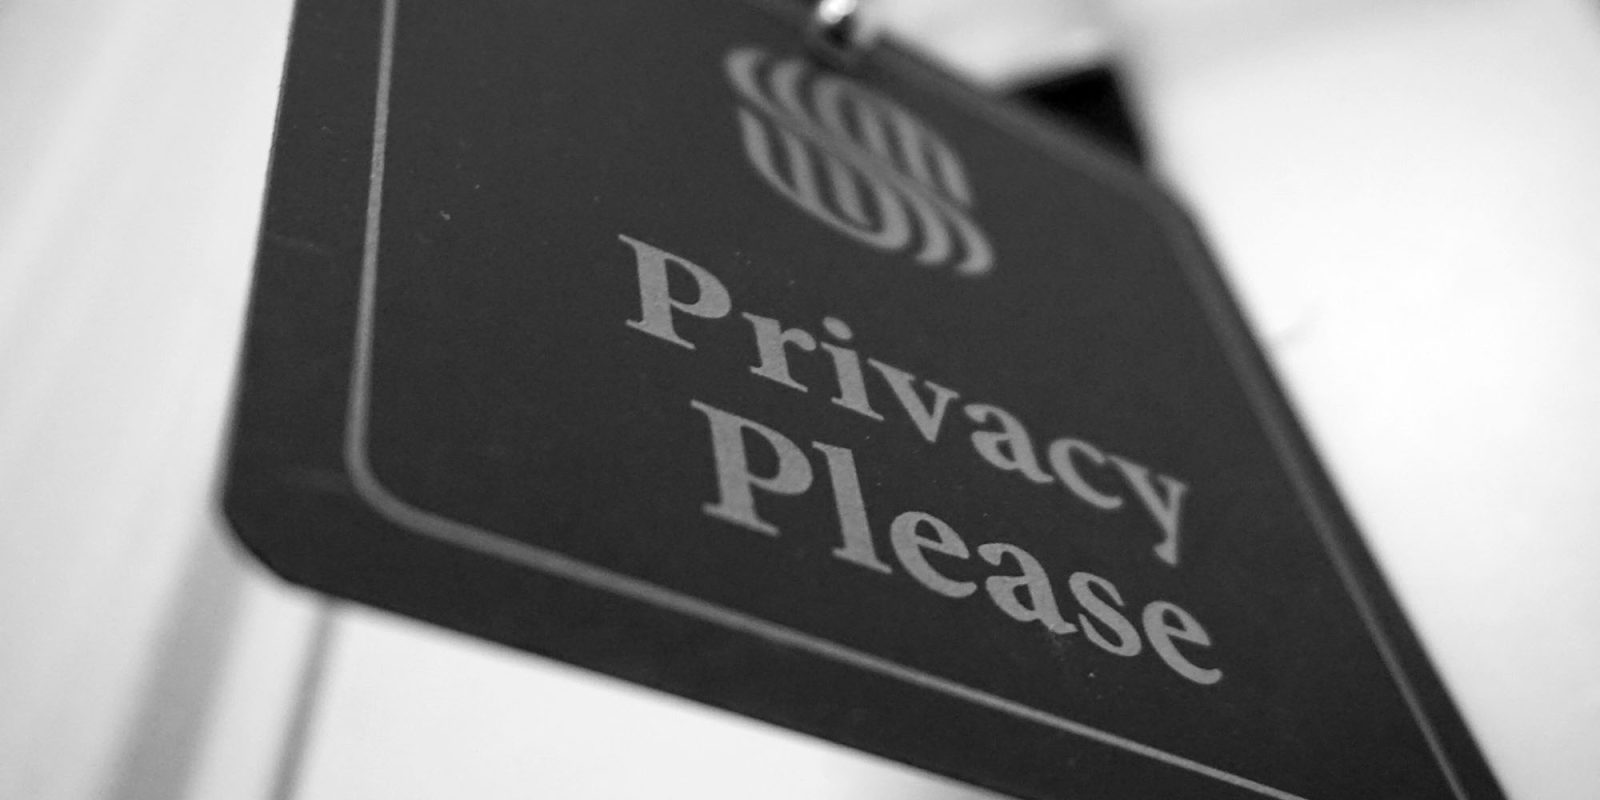 La loi fédérale sur la protection de la vie privée pourrait être adoptée cette année |  Confidentialité Veuillez signer